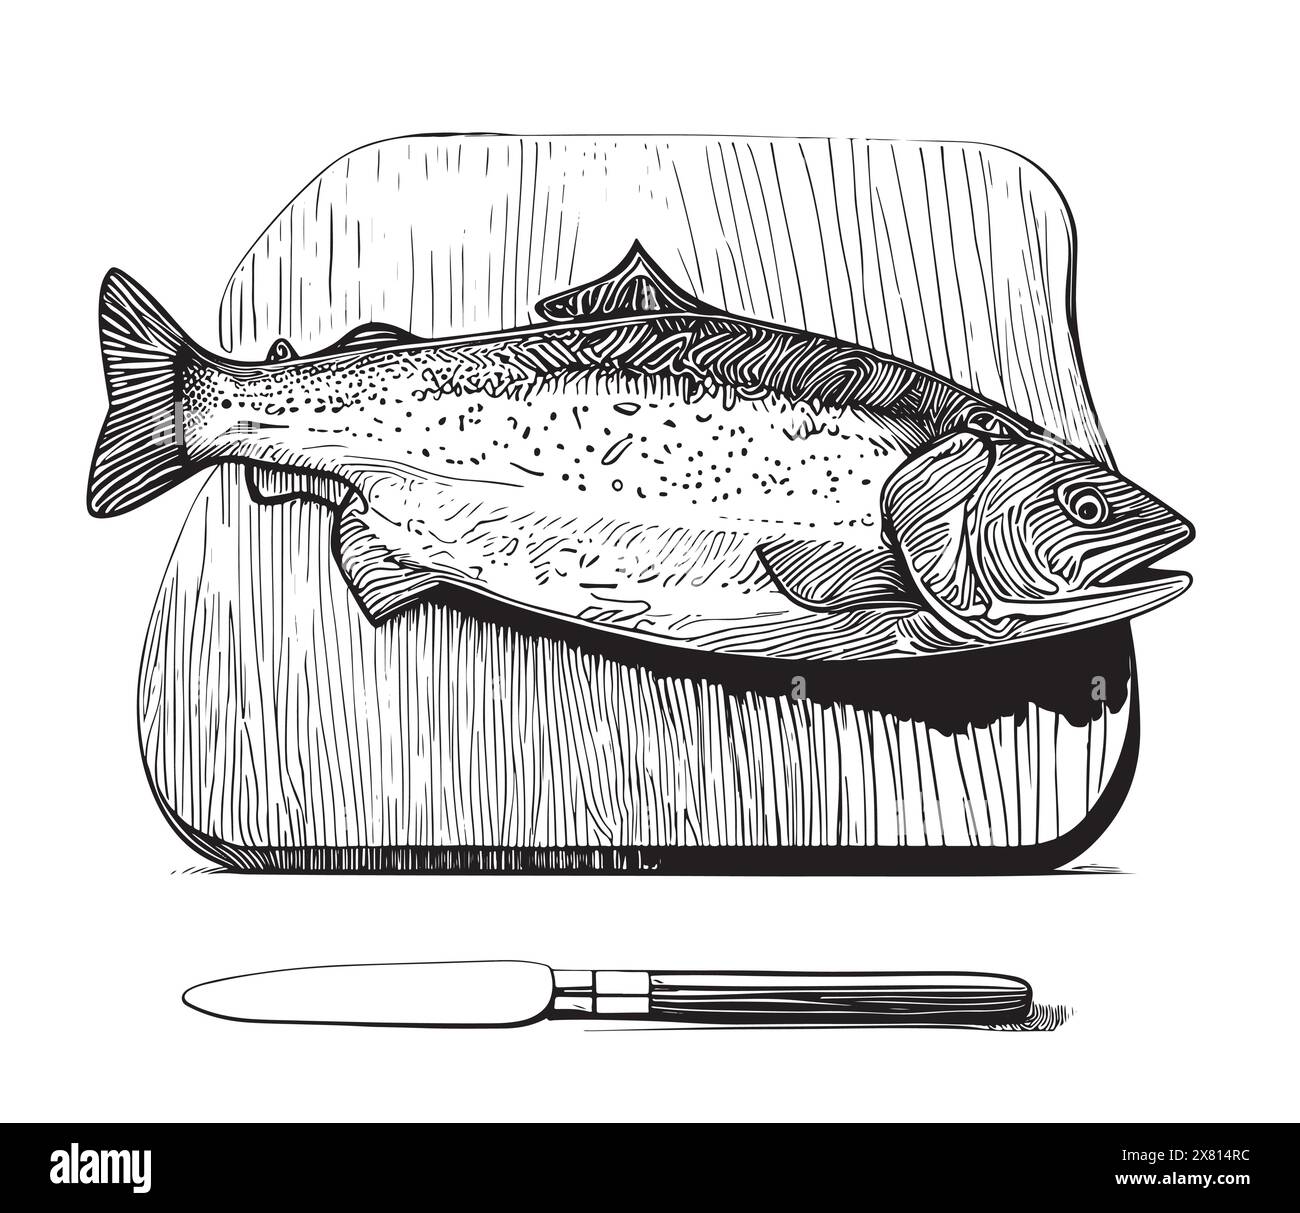 Fisch Steak auf Schneidebrett Hand Zeichnung Skizze Gravur Illustration Stil Stock Vektor